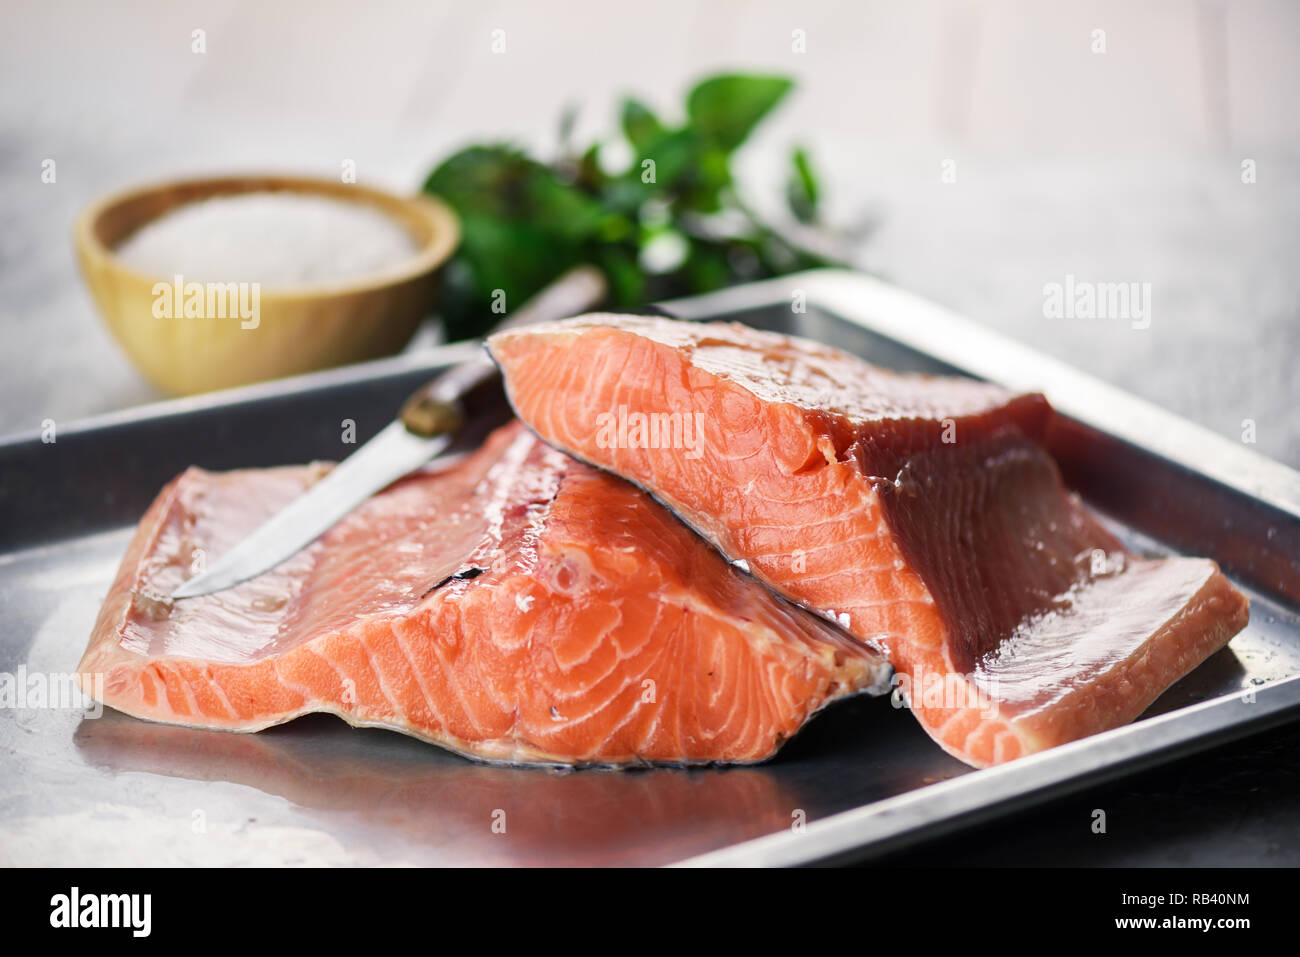 Le filet de saumon le poisson sur la plaque de métal libre. La photographie alimentaire Banque D'Images